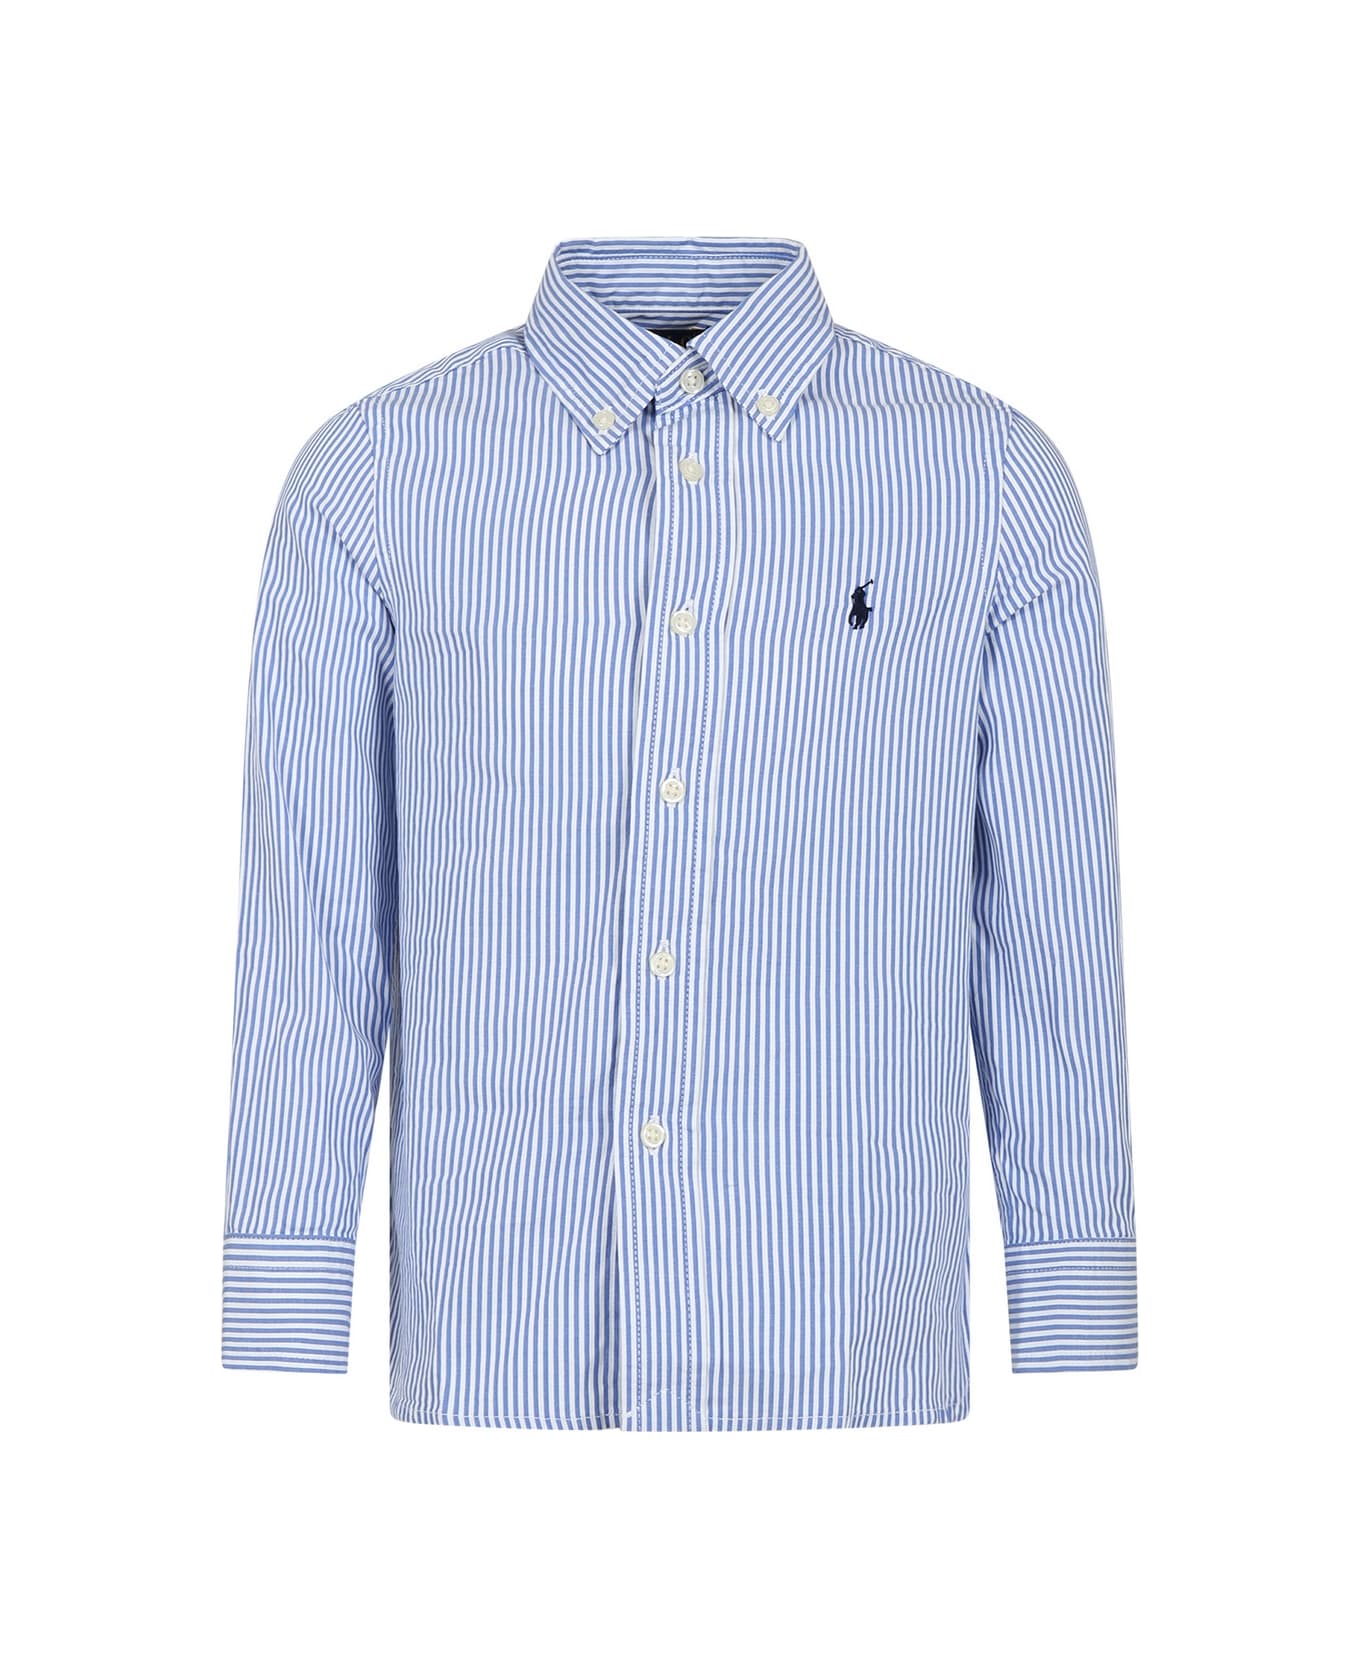 Ralph Lauren Light Blue Shirt For Boy With Logo - Light Blue